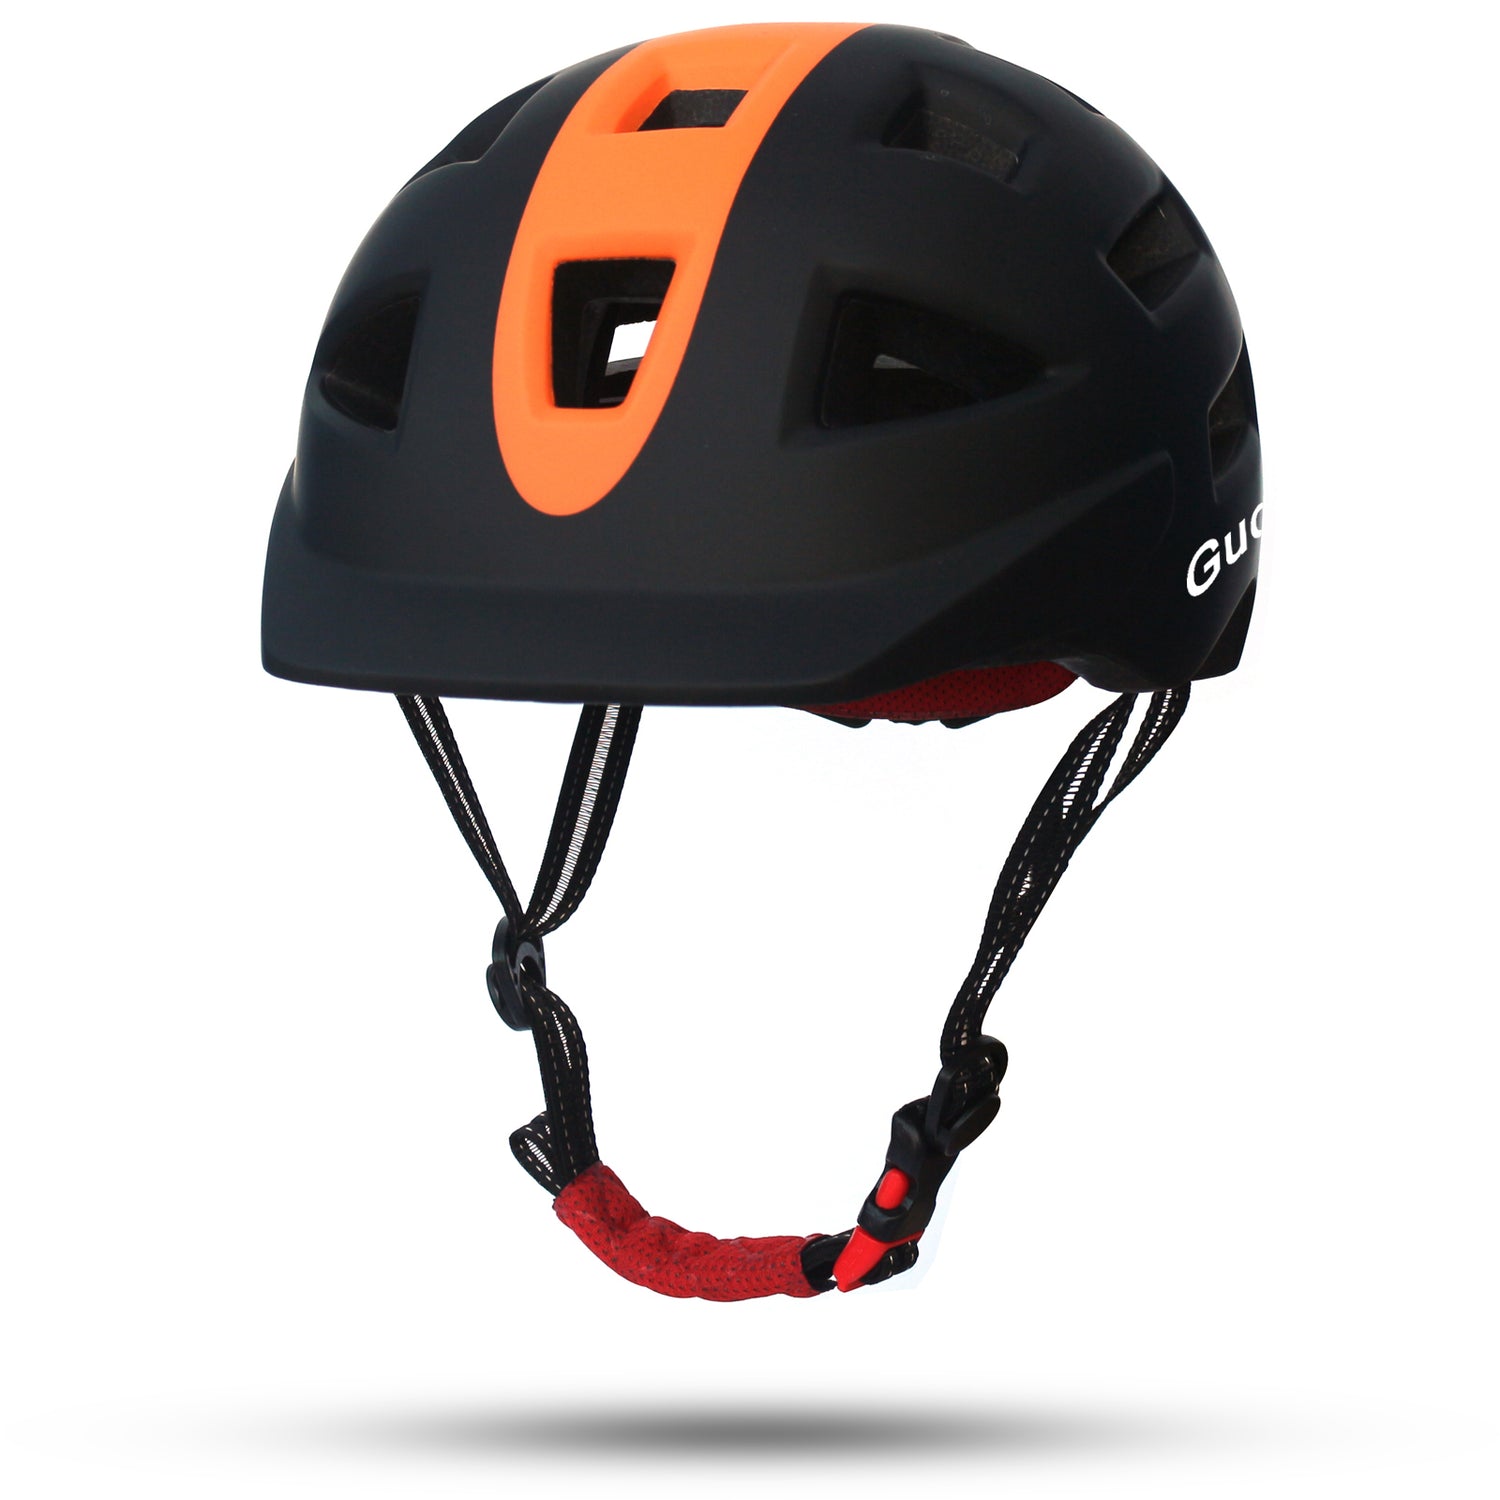 Gudook Manufacturer Bike Helmets KY-050